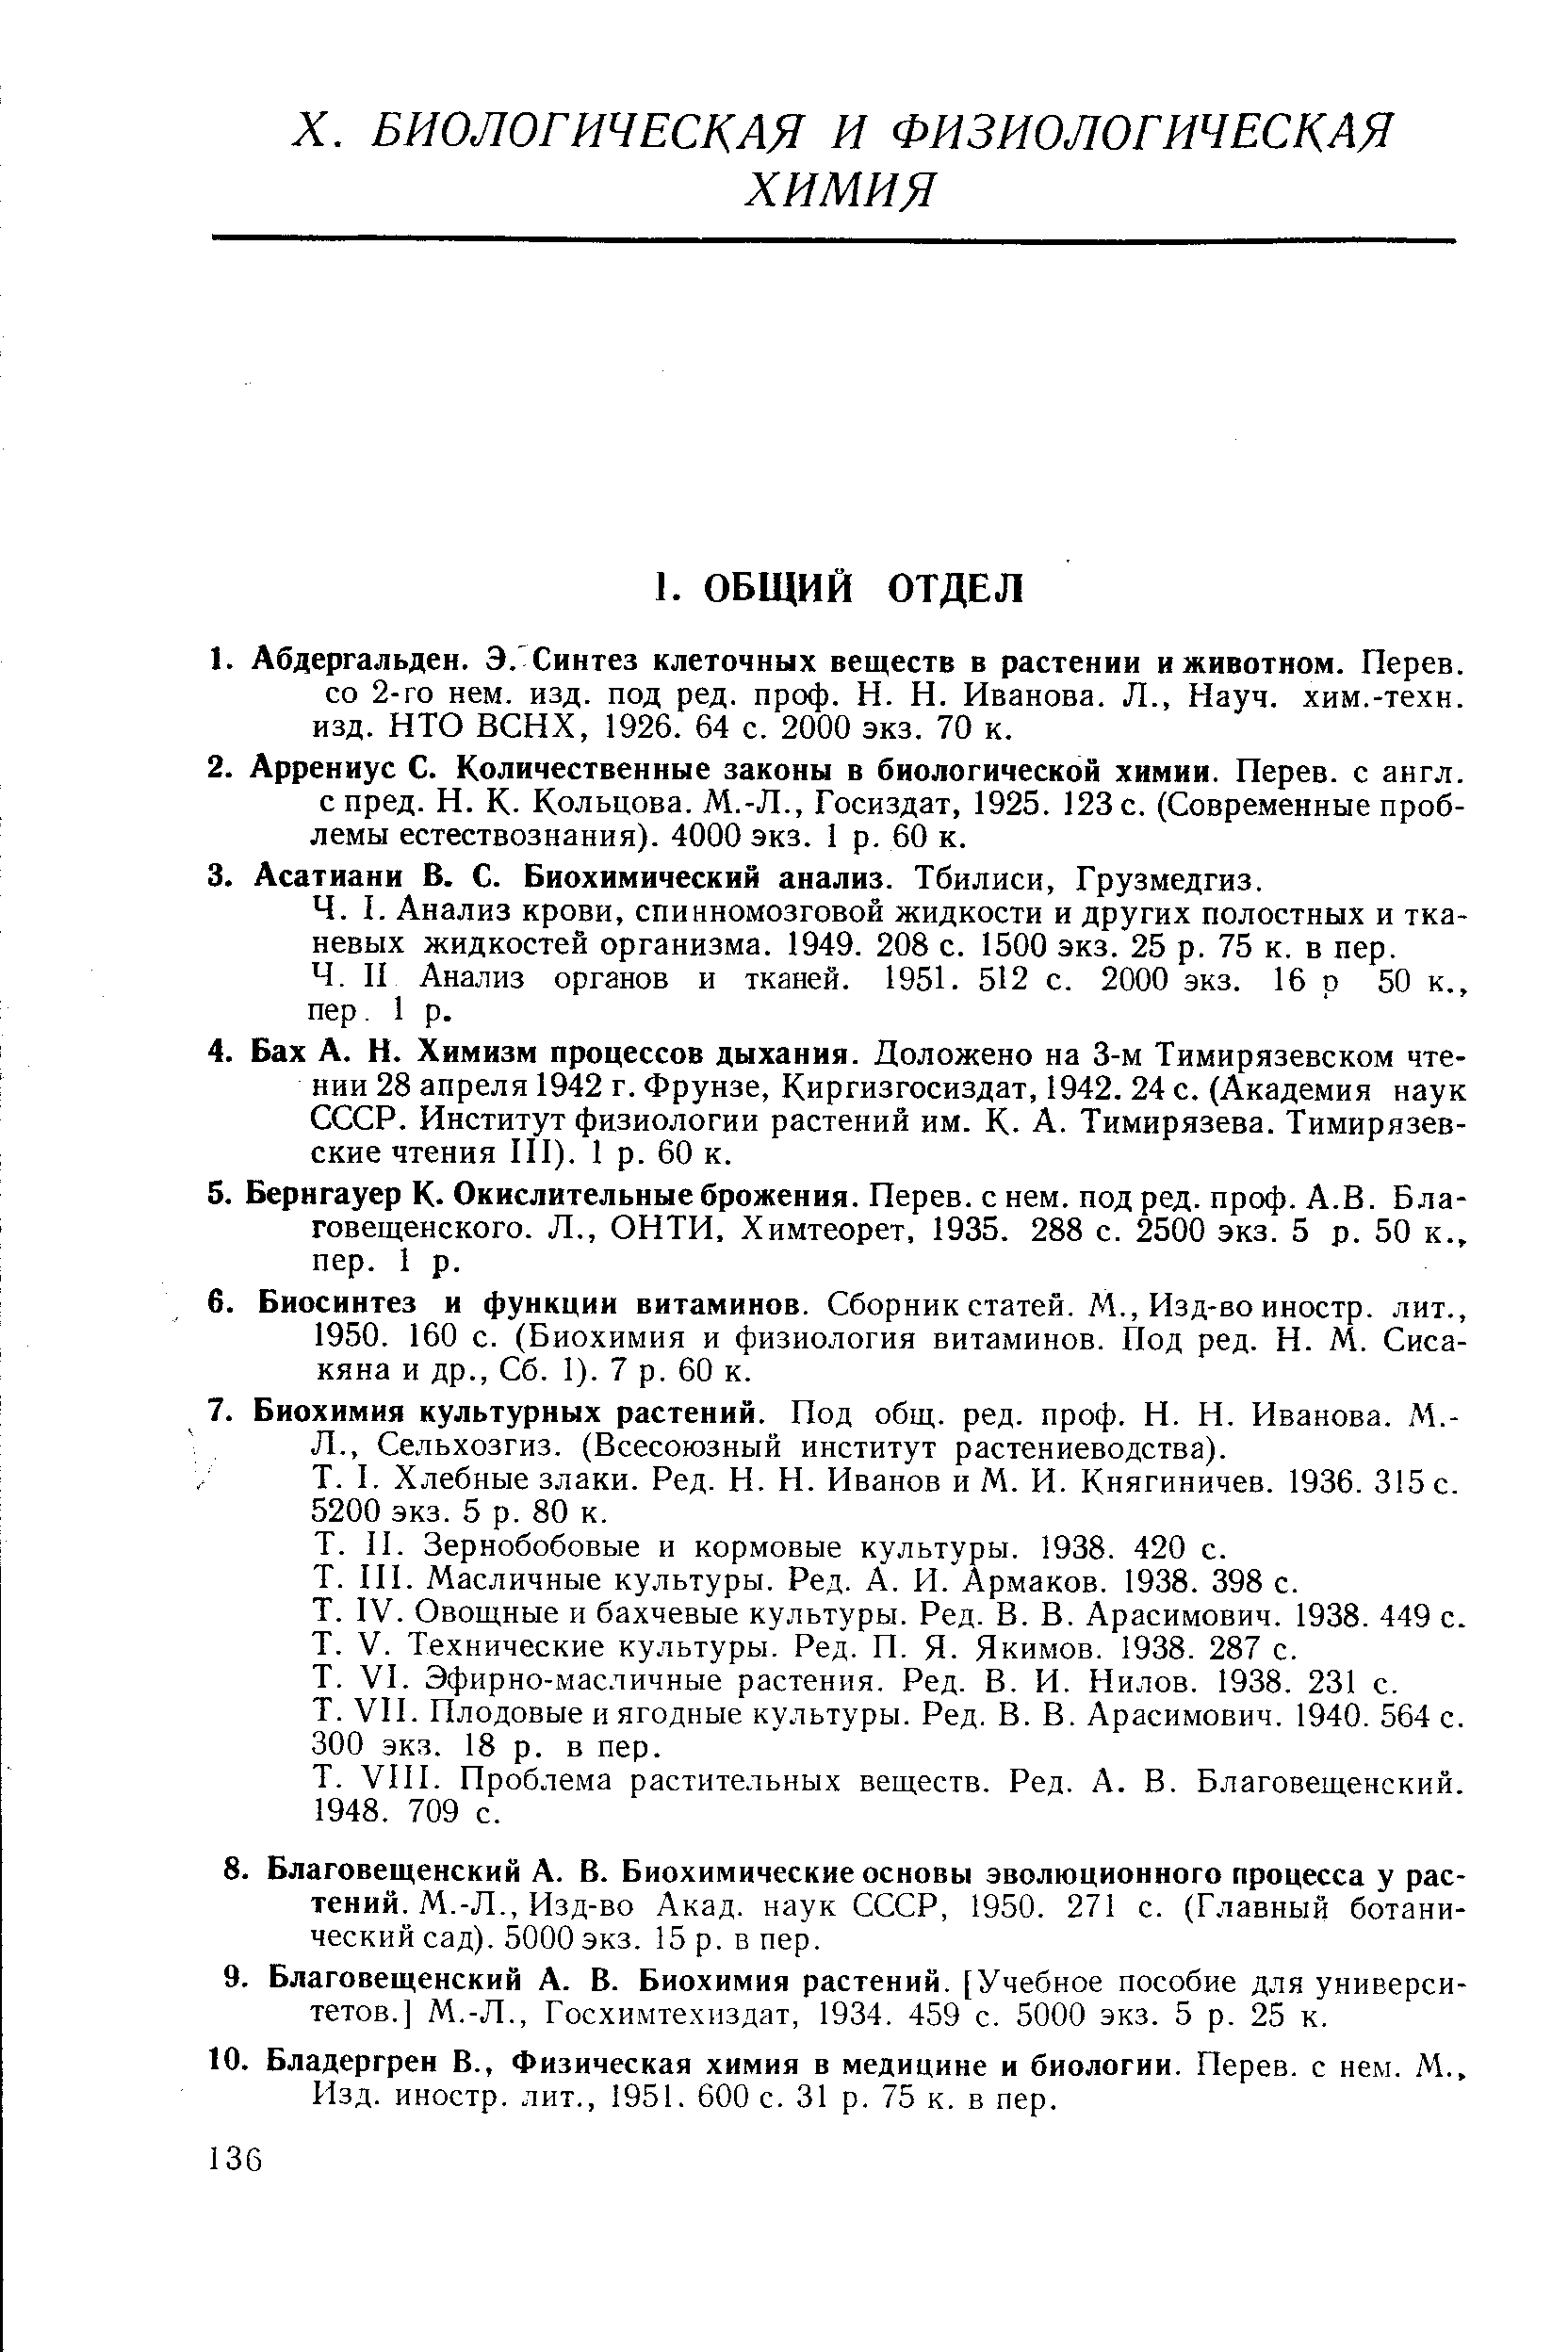 II Анализ органов и тканей. 1951. 512 с. 2000 экз. 16 р 50 к., пер. 1 р.